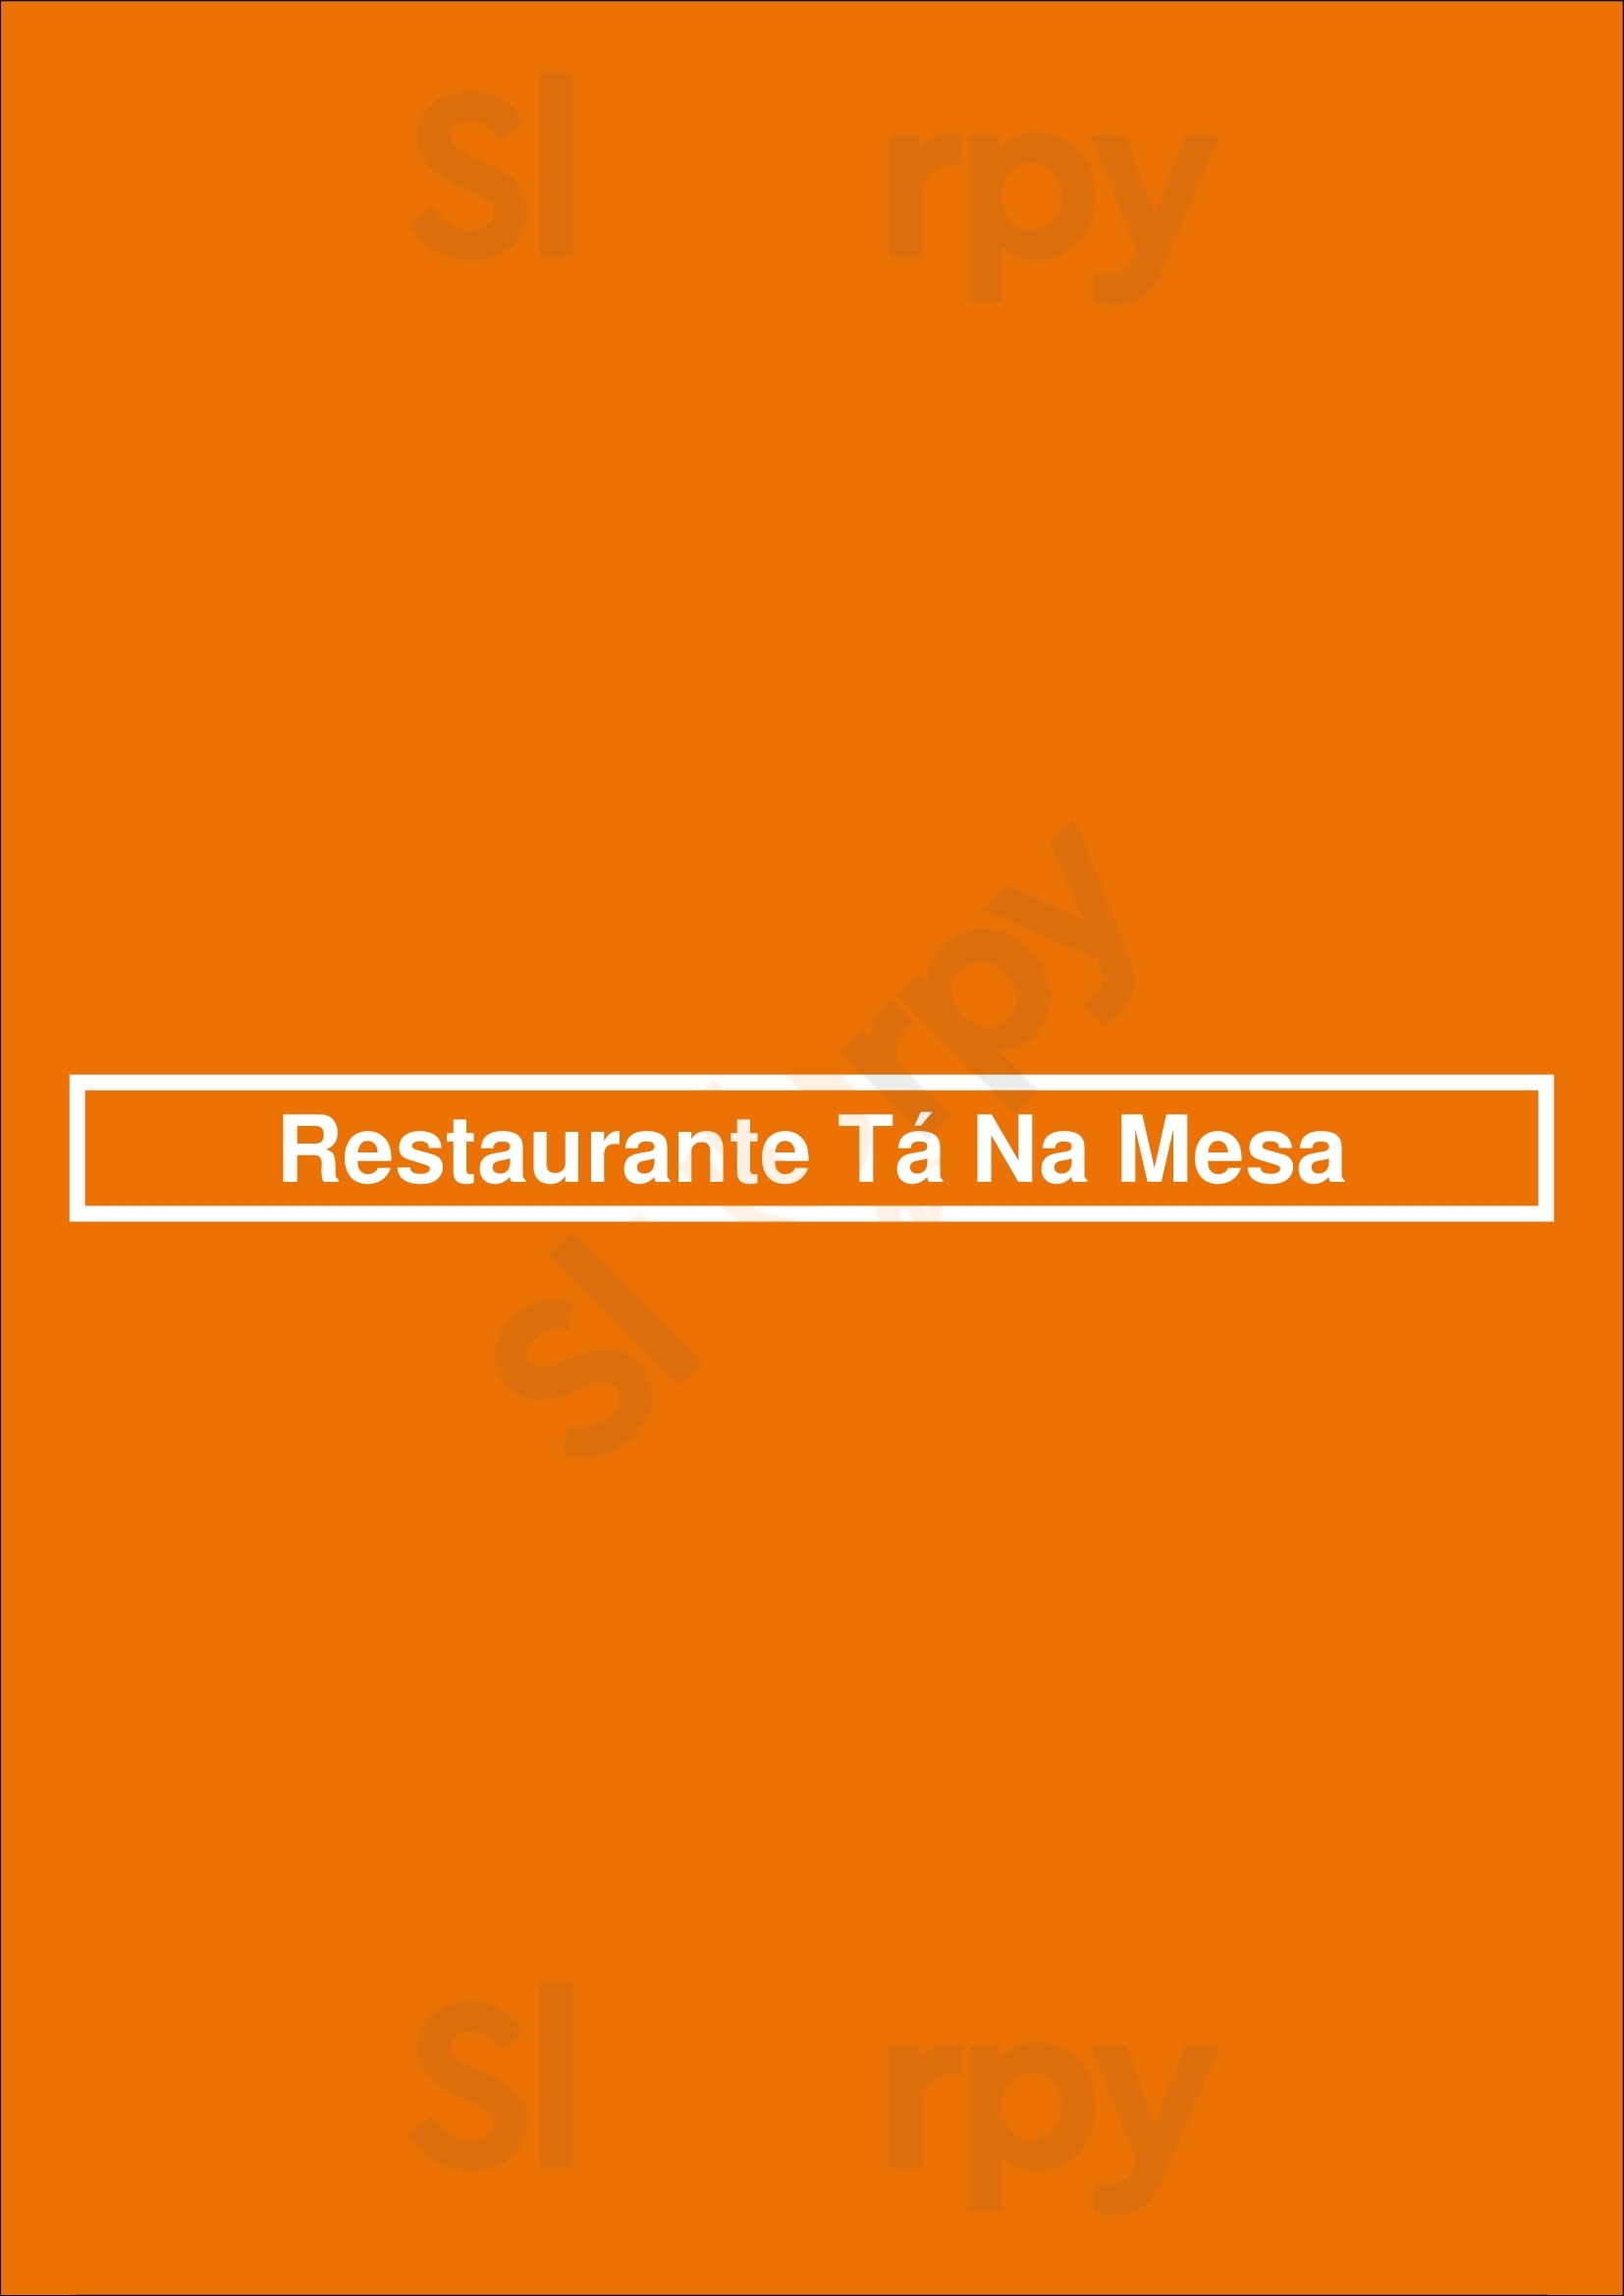 Restaurante Tá Na Mesa Vila Nova de Gaia Menu - 1